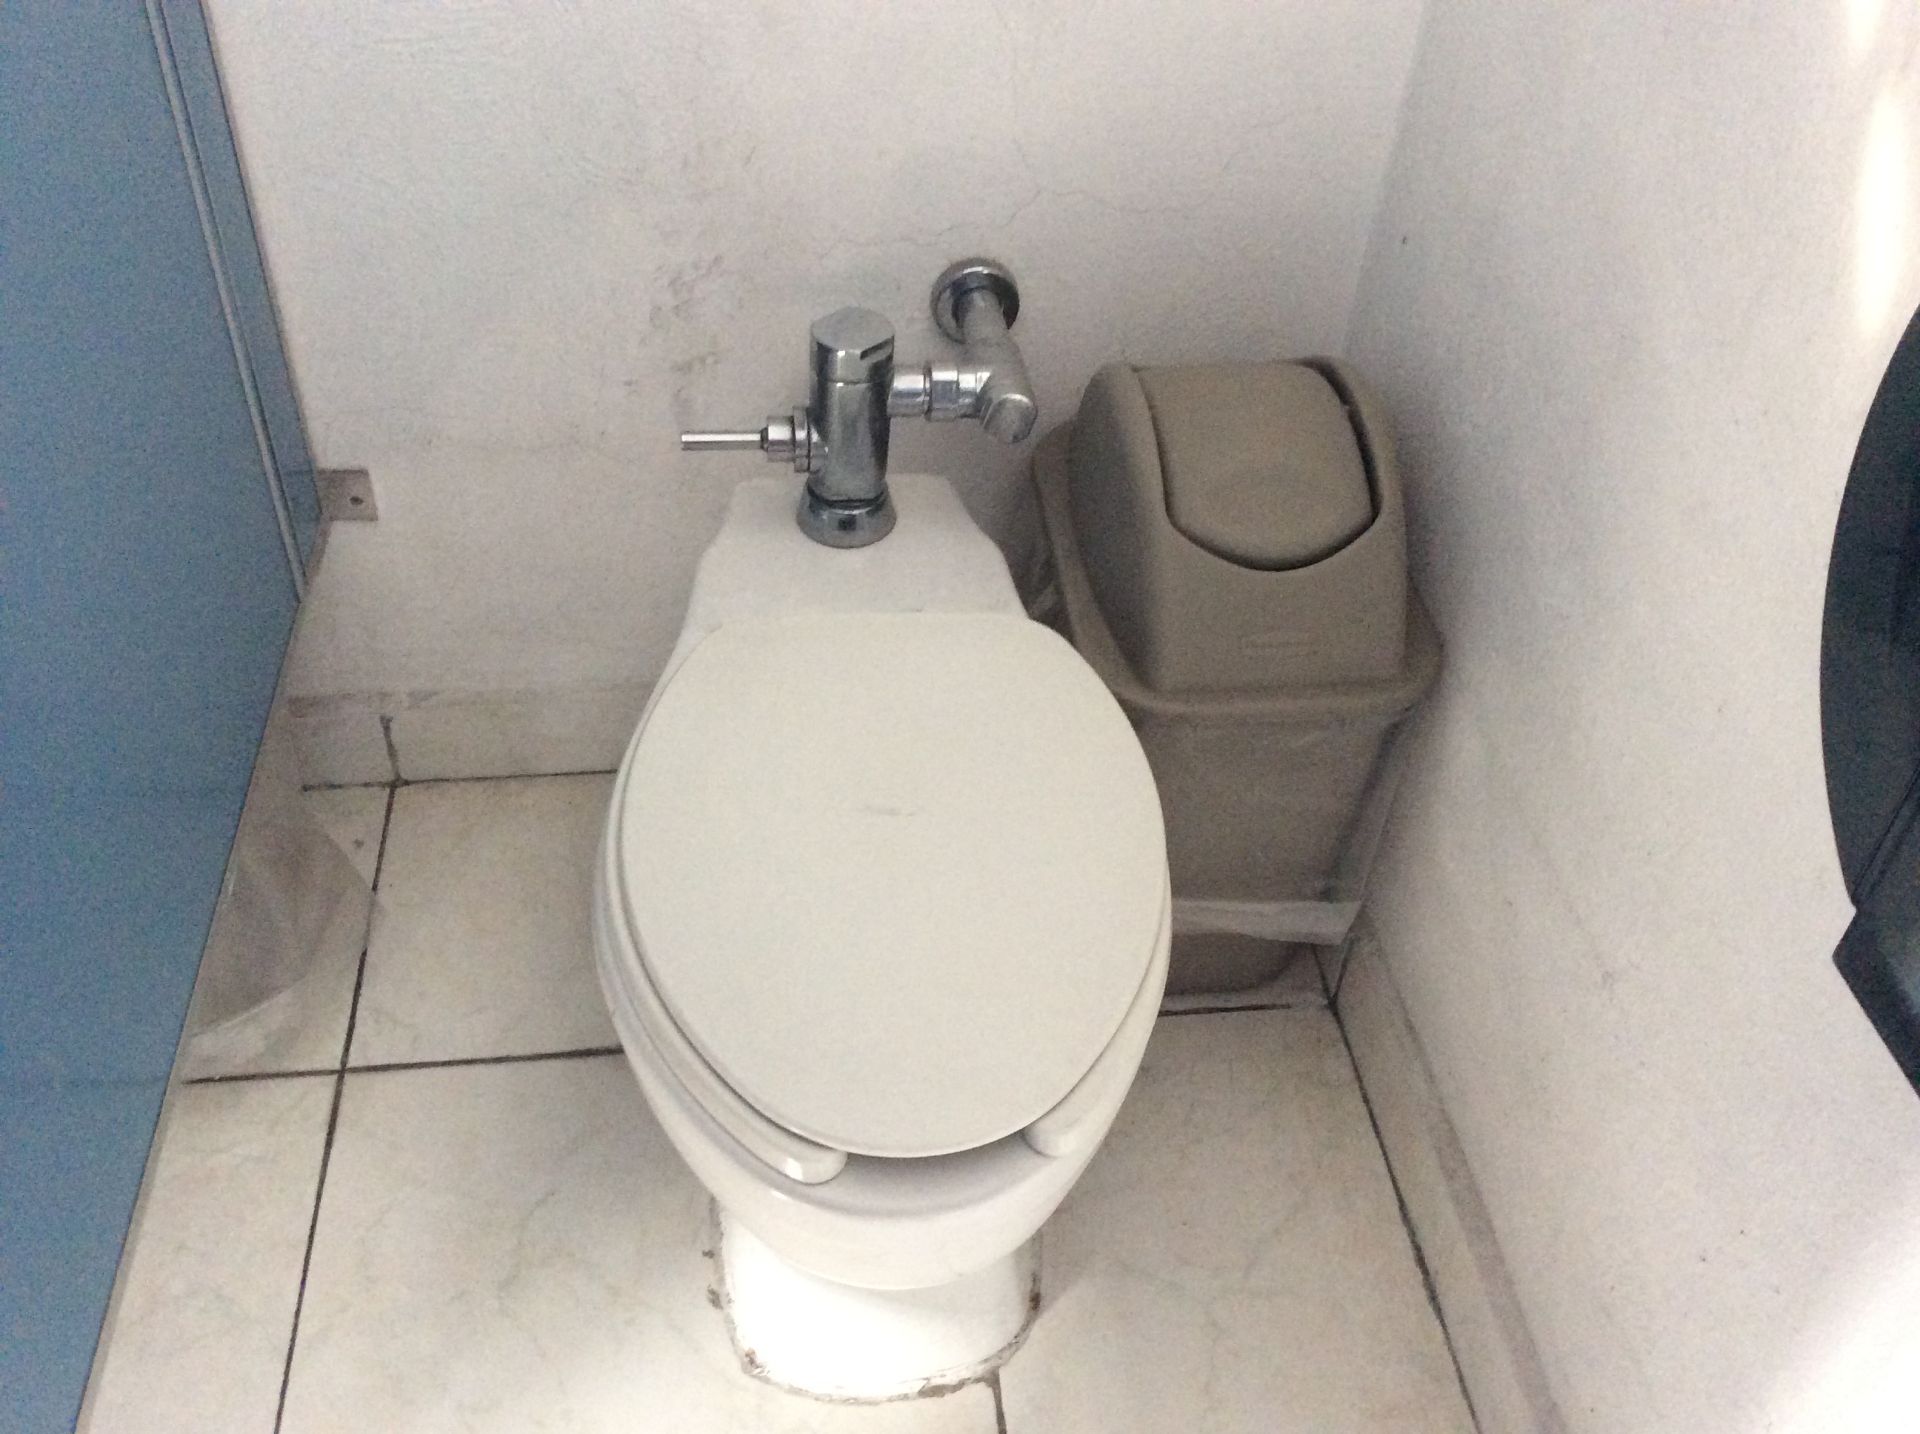 Baño de hombres oficinas planta baja, 3 WC - Image 9 of 12